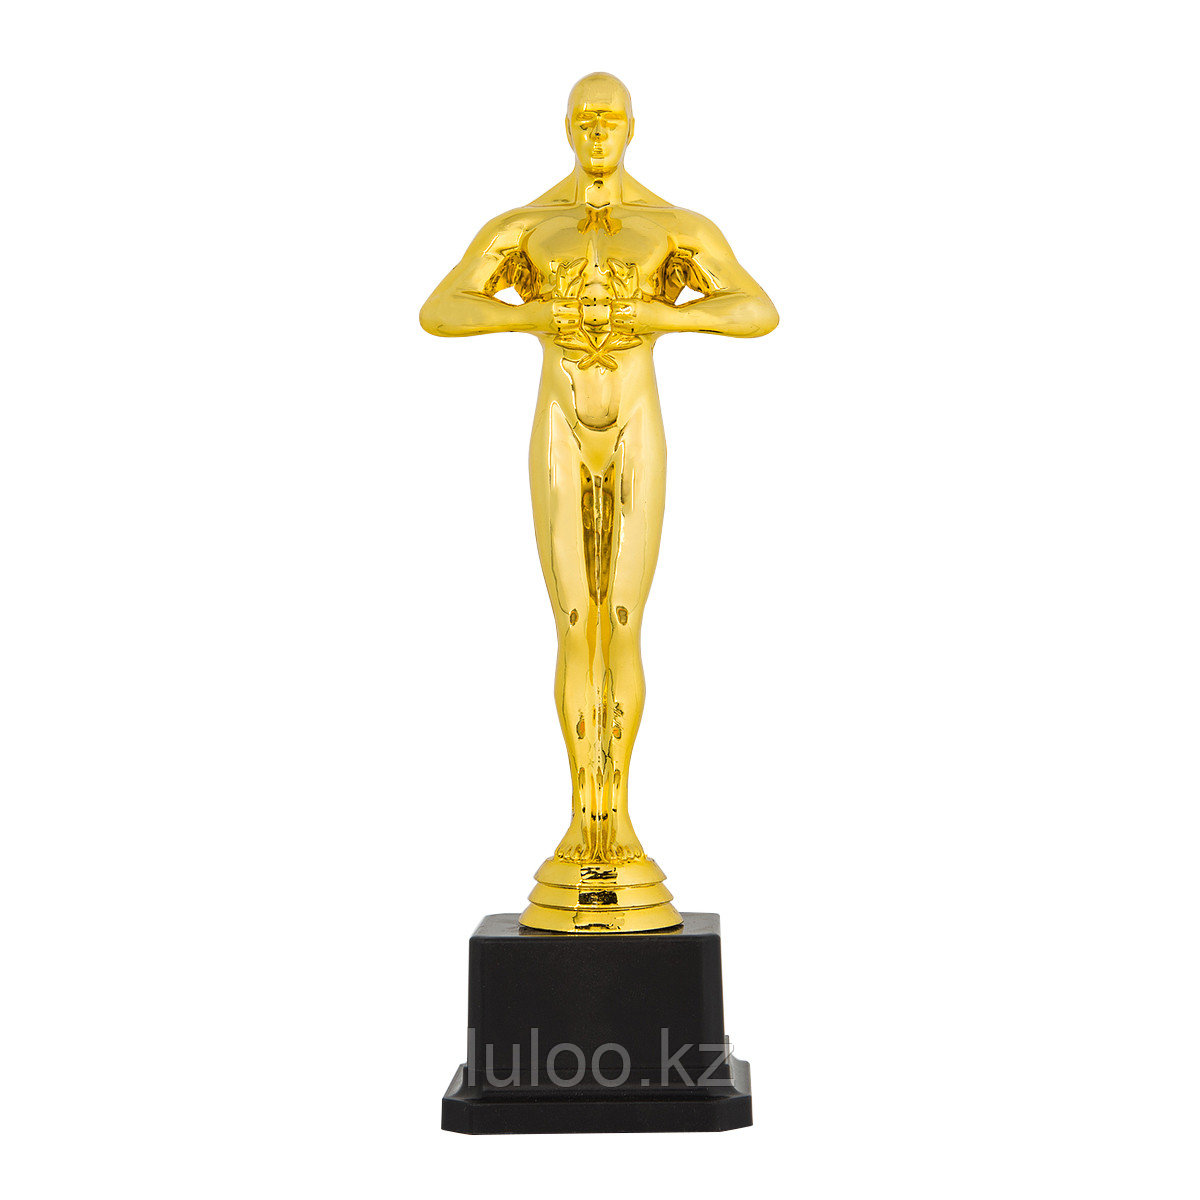 Статуэтка Оскар в черной подставке, 22см